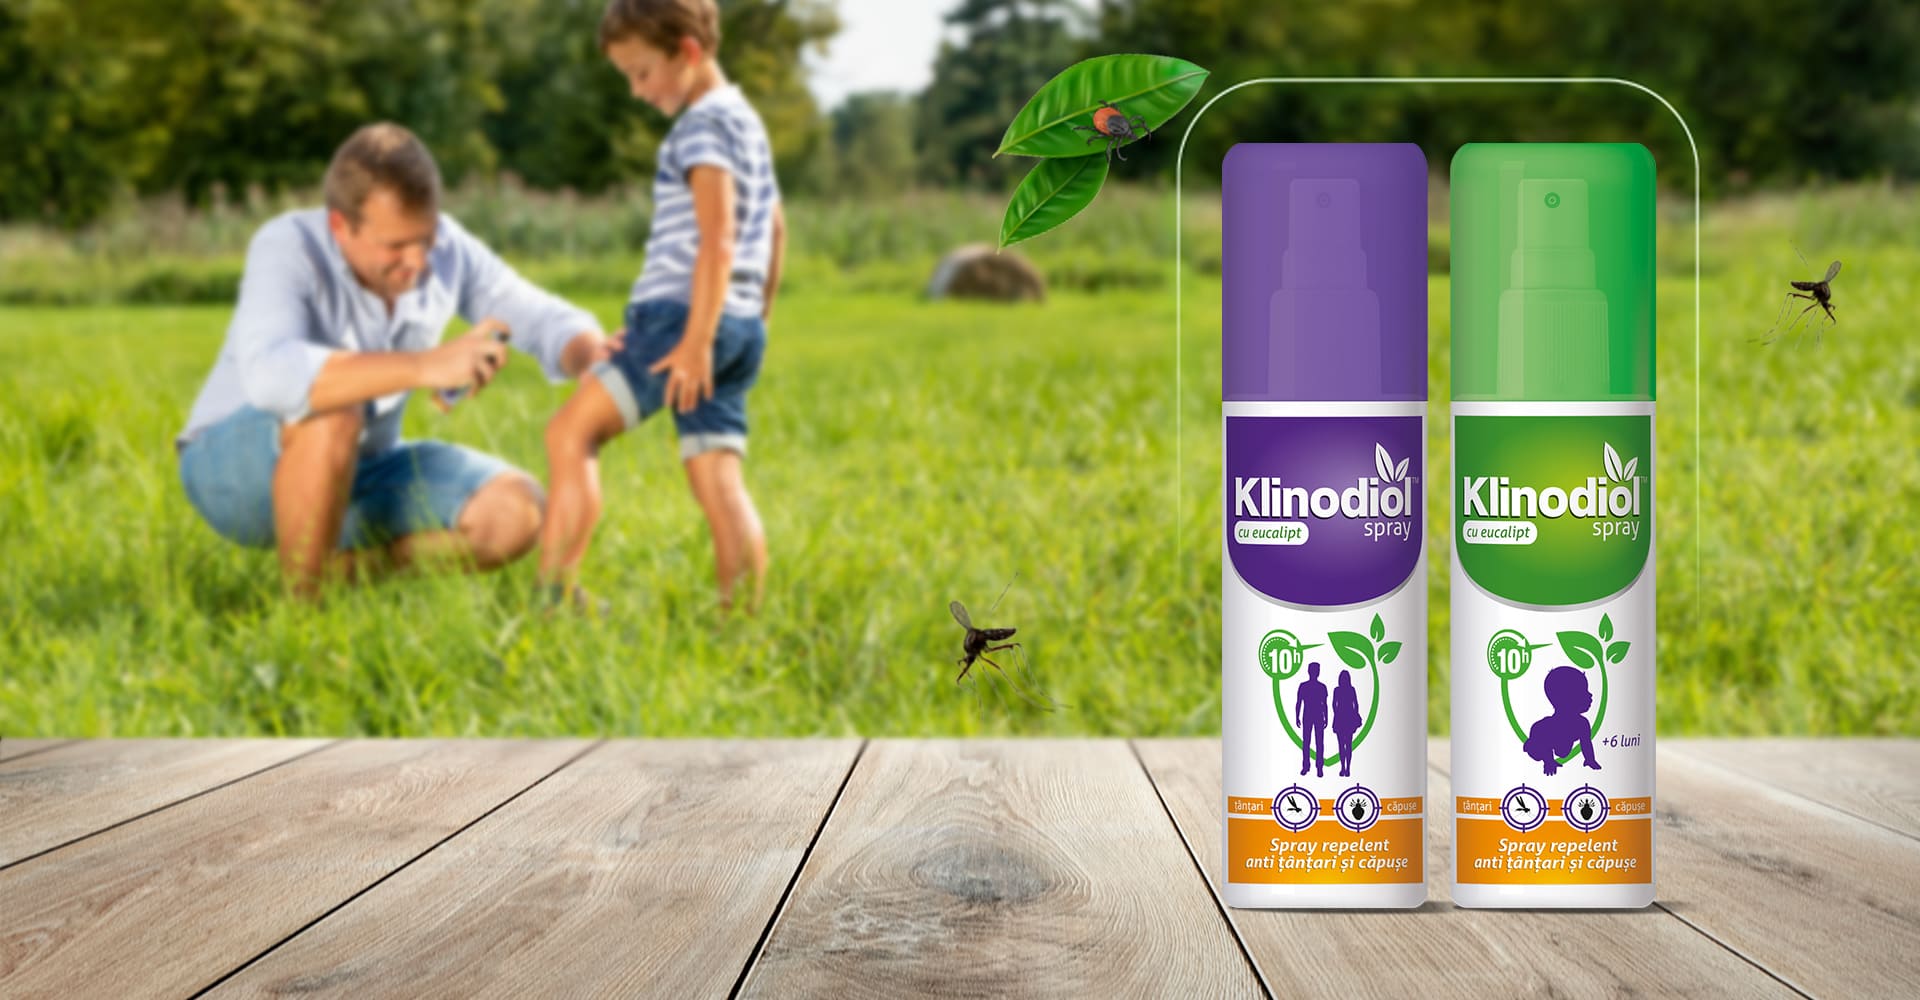 pesta porcină - Soluția la îndemâna oricui împotriva insectelor și a căpușelor: Klinodiol, spray repelent cu eucalipt